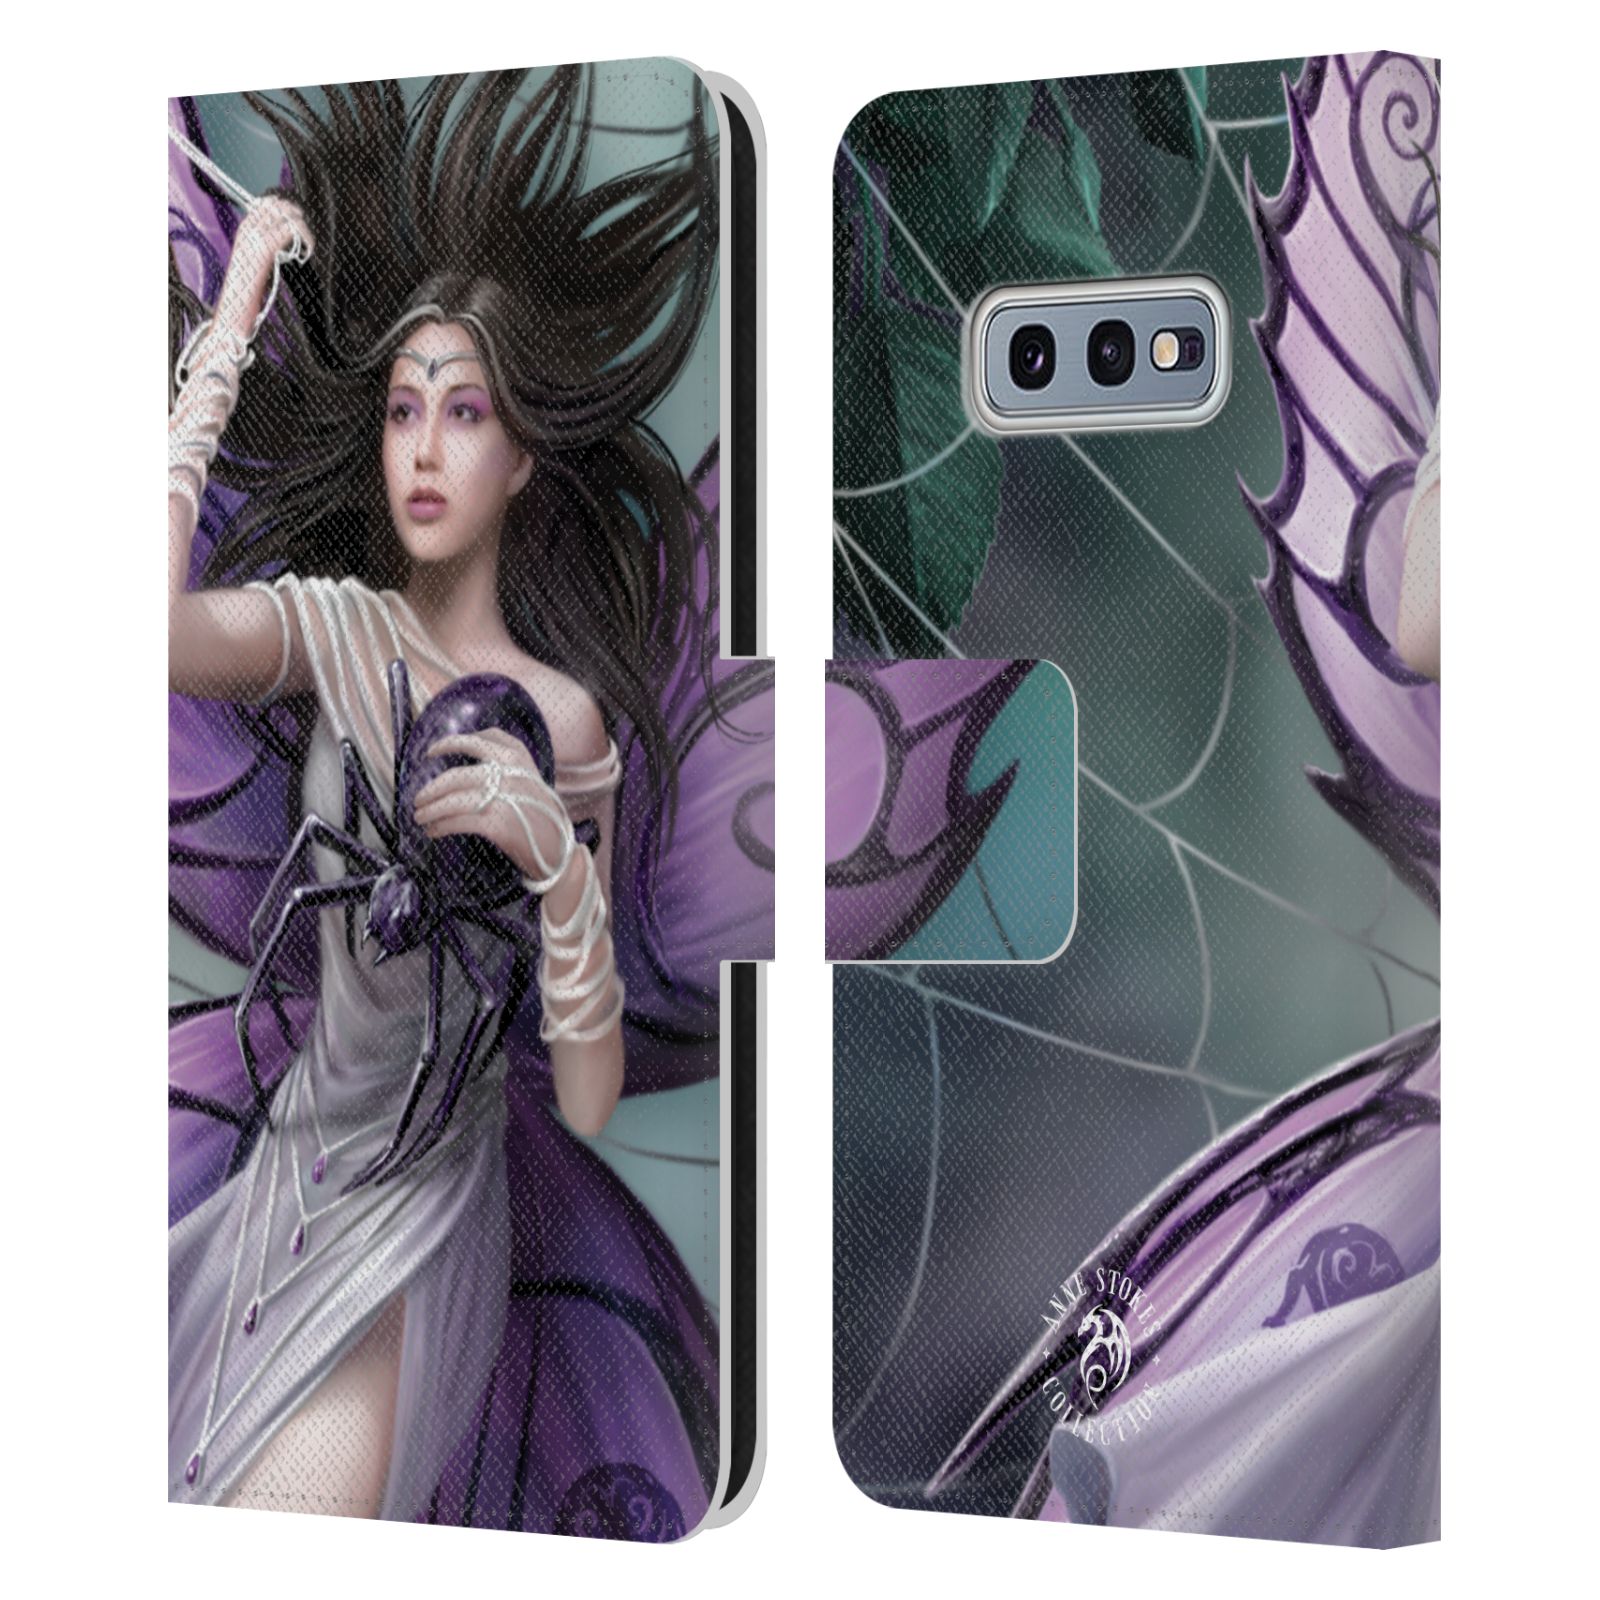 Pouzdro HEAD CASE na mobil Samsung Galaxy S10e  fantasy - žena svůdnice